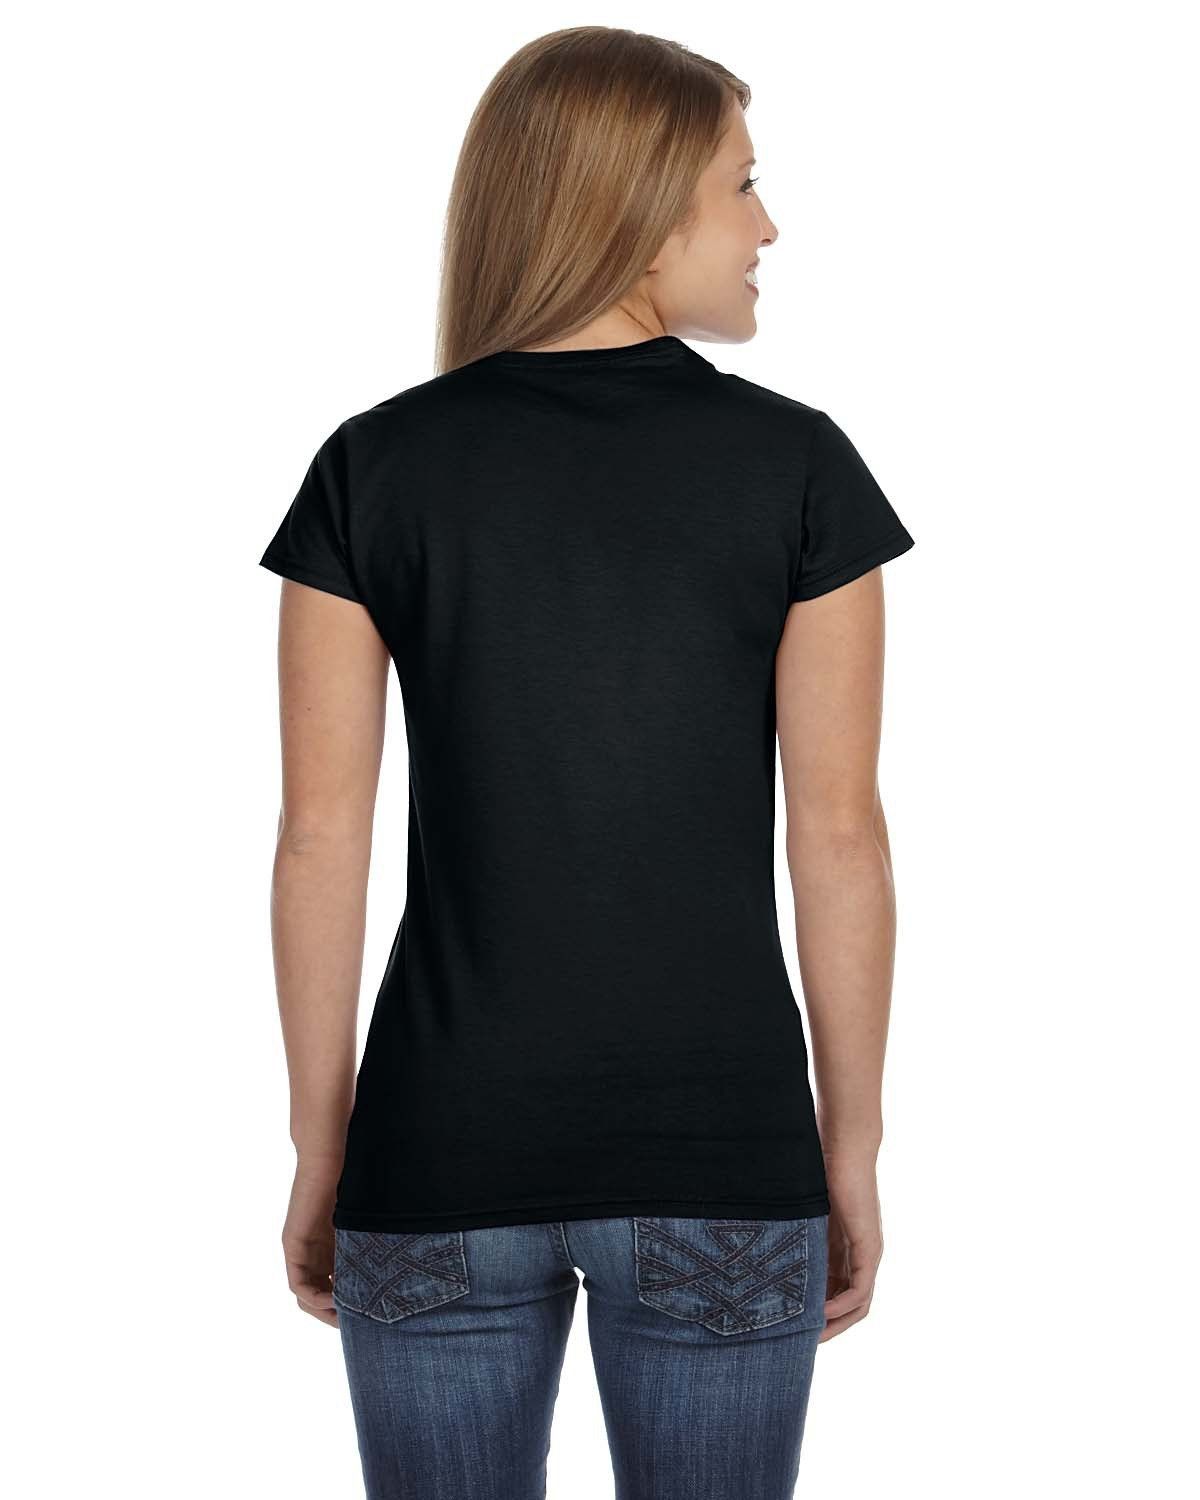 'Gildan G640L Softstyle Women’s T Shirt'